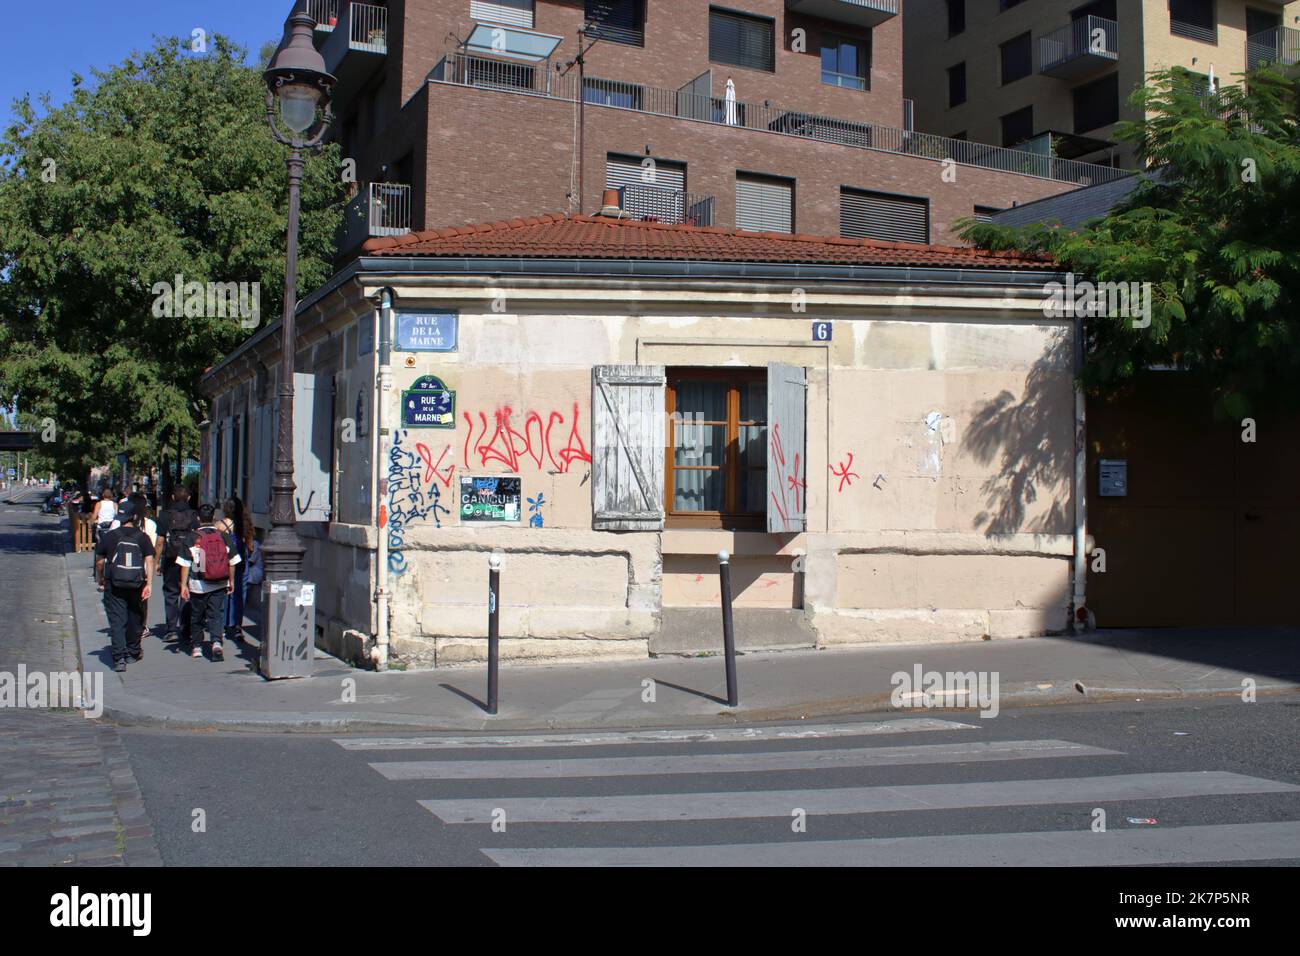 Vue d'angle de la rue de la Marne près du bassin de la Villette situé dans le 19th arrondissement de Paris France. Banque D'Images